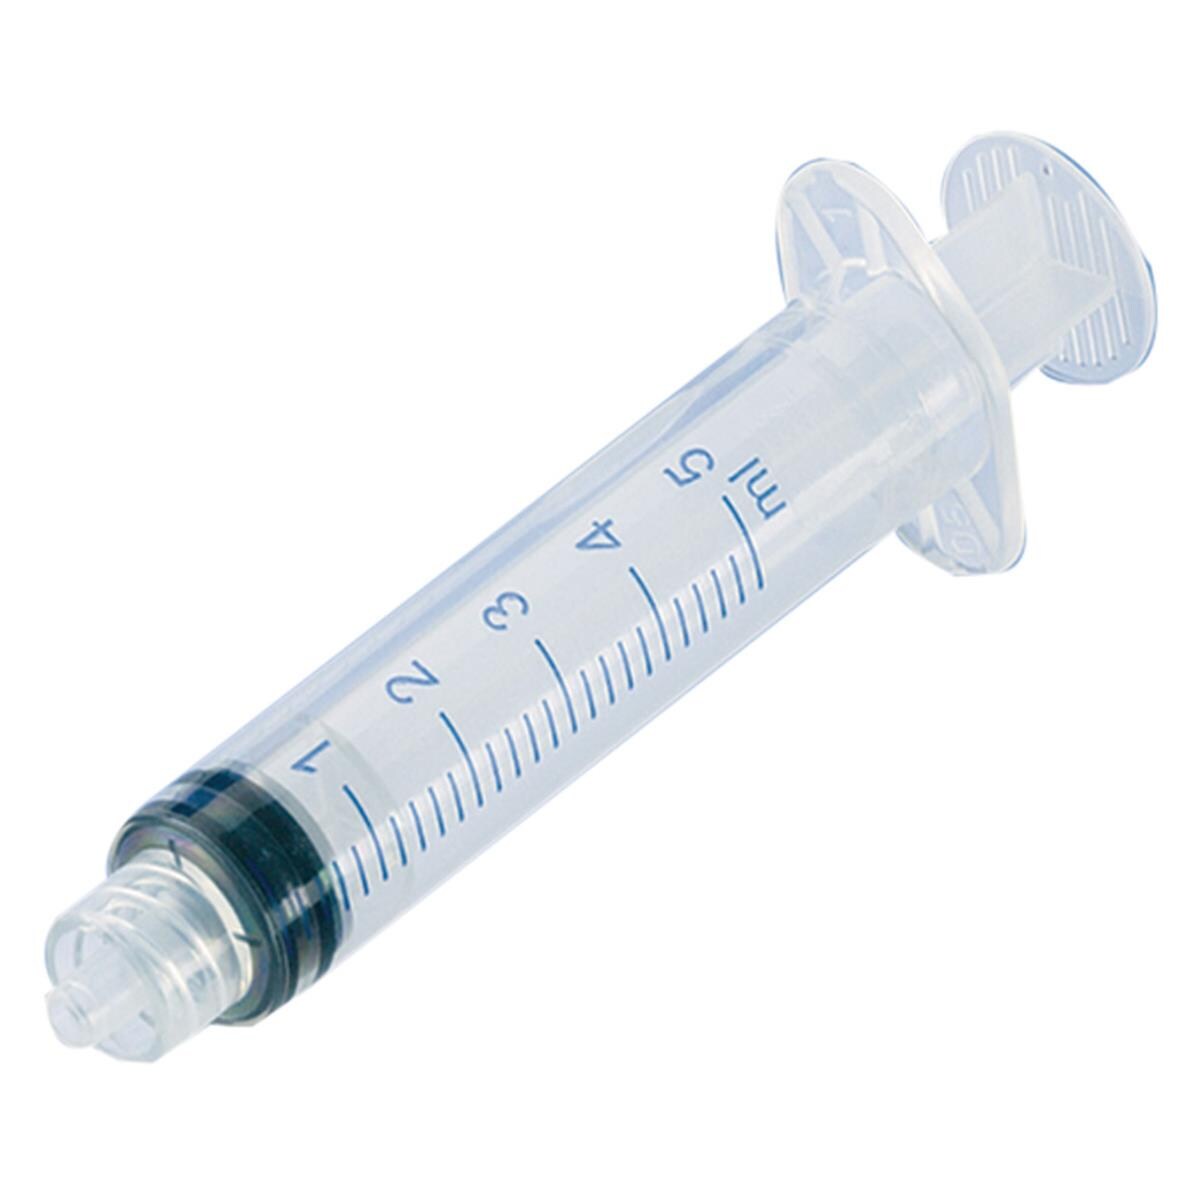 HS Disposable Syringe Sterile Luer Lock 5ml 100pk